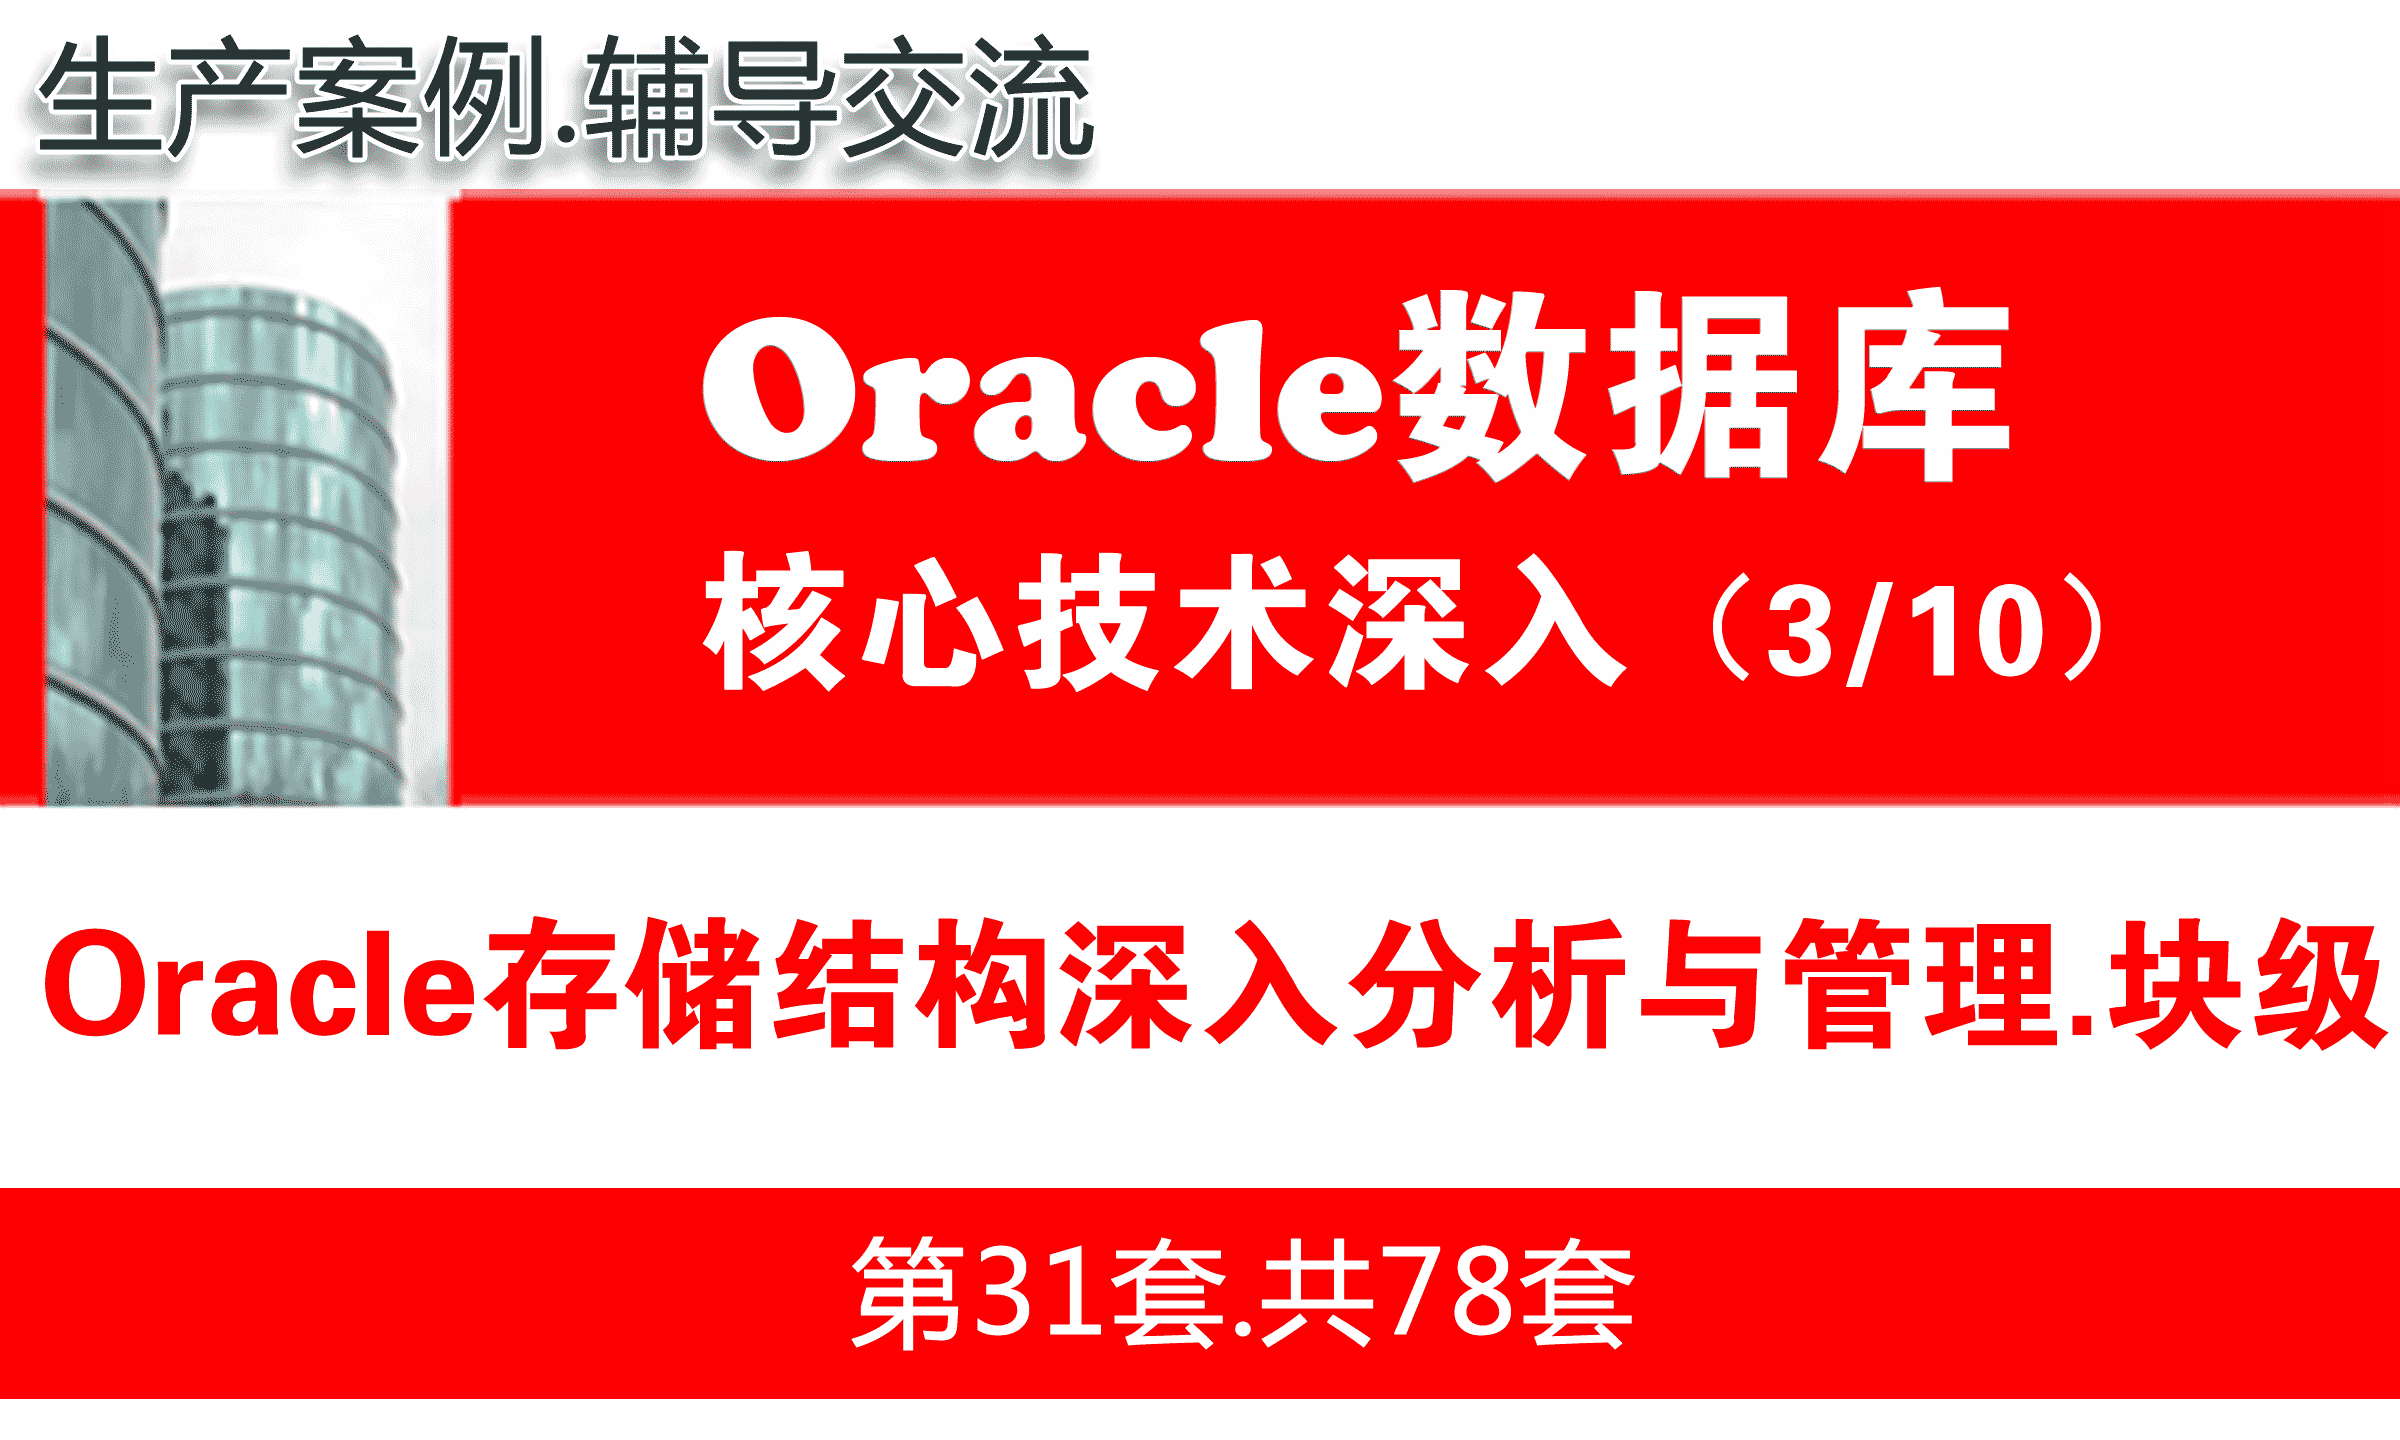 Oracle存储结构深入分析与管理_Oracle视频教程_基础深入与核心技术03